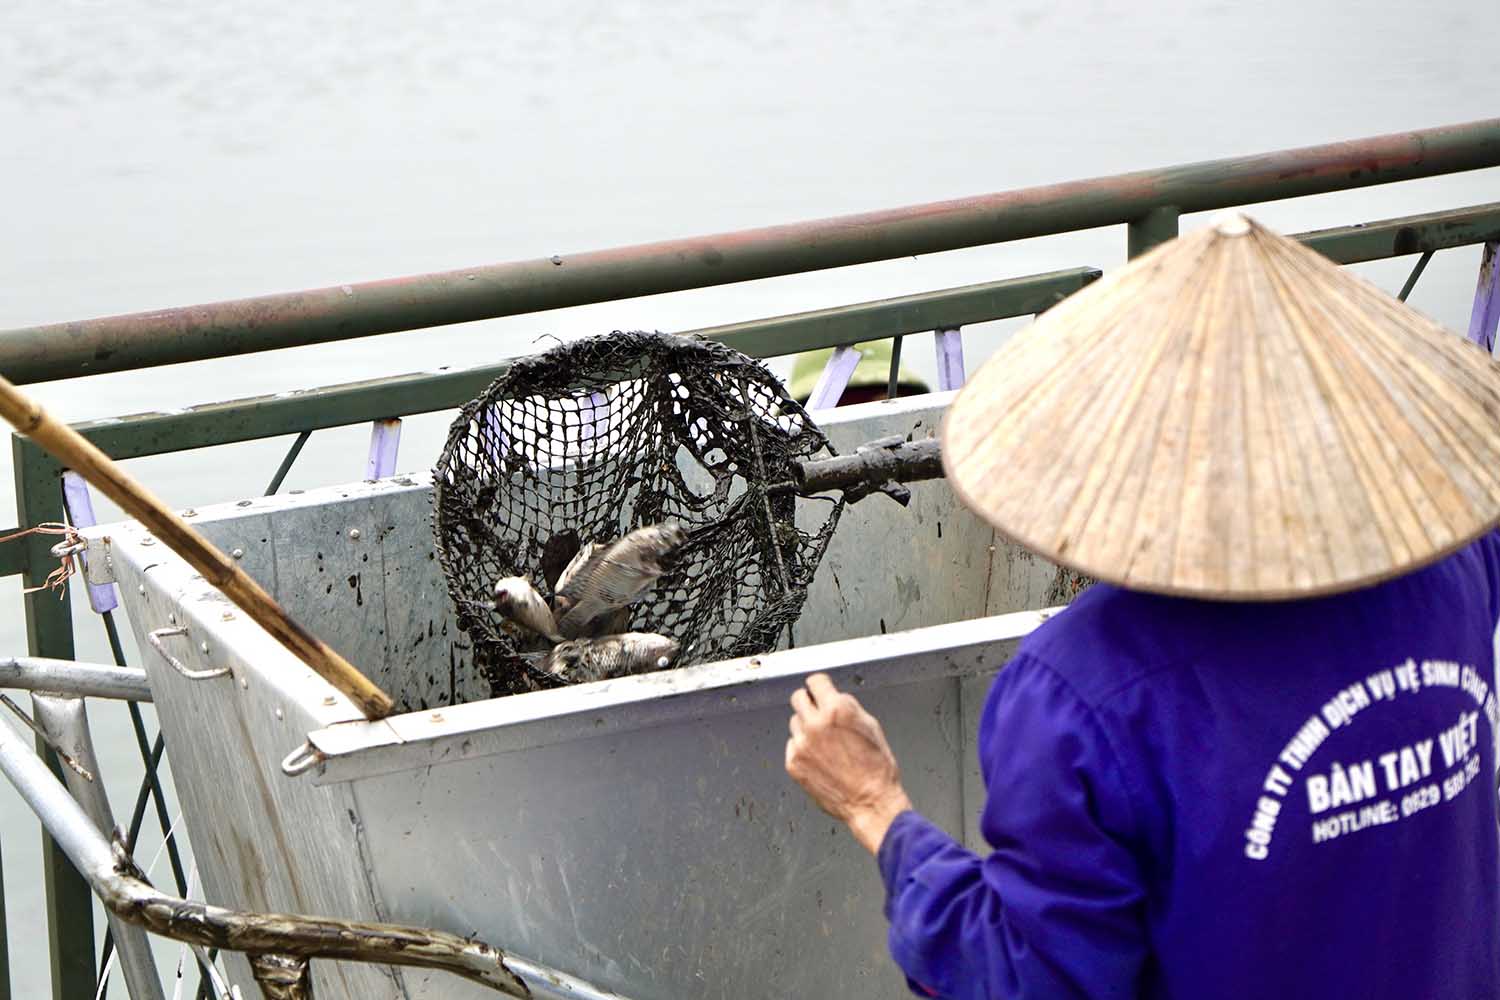 Tuy nhiên, khi công nhân môi trường sử dụng vợt lưới để thu gom cá chết thì có chất lạ màu đen dính vào, gây khó khăn cho quá trình dọn dẹp vệ sinh